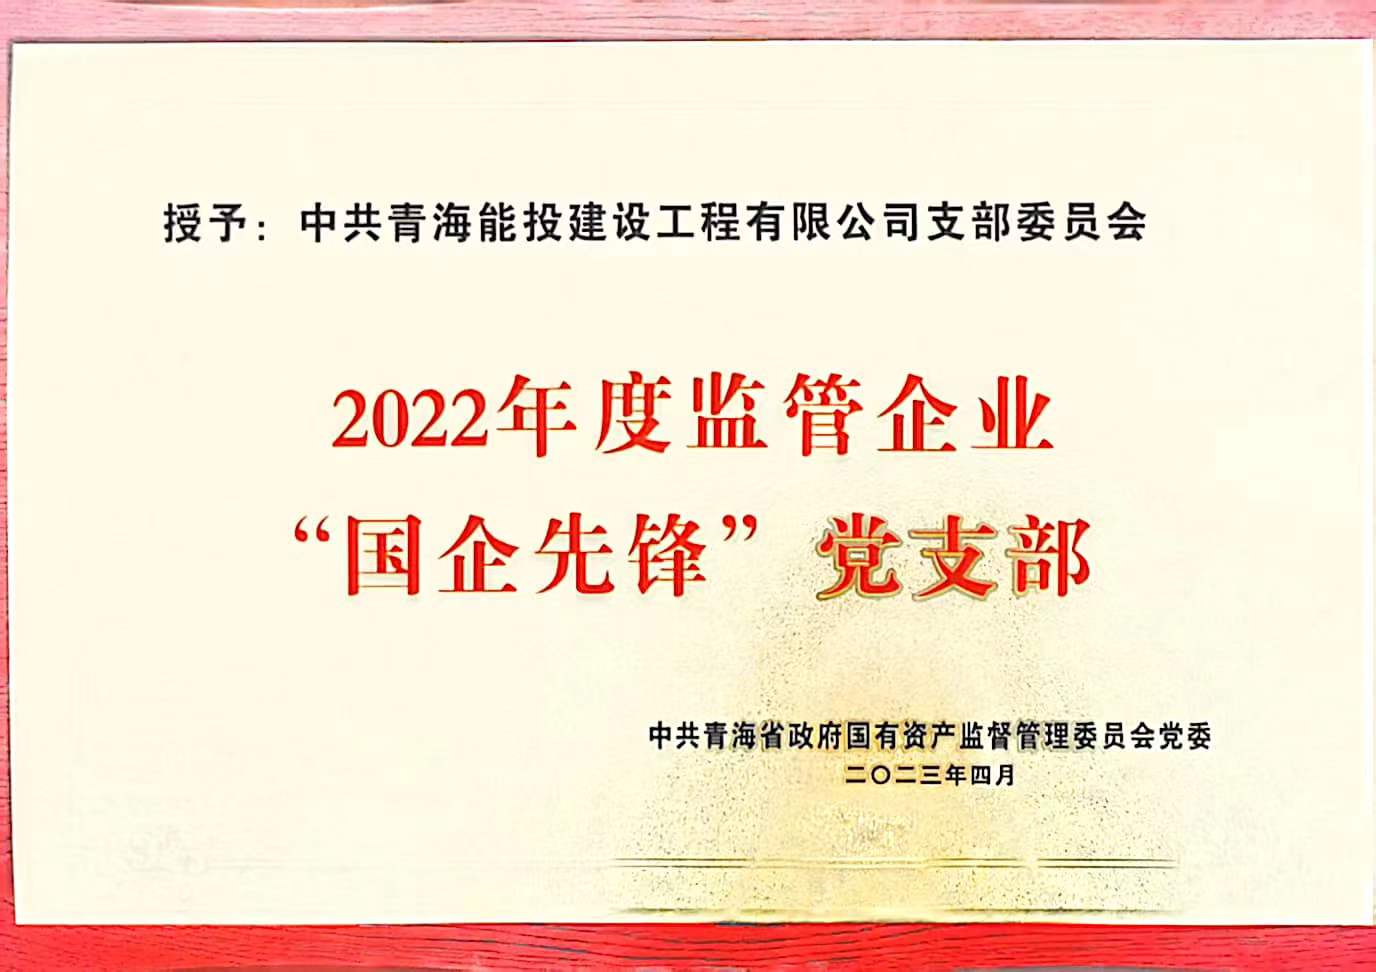 建设工程公司党支部获得2022年度“国企先锋”党支部荣誉称号.jpg